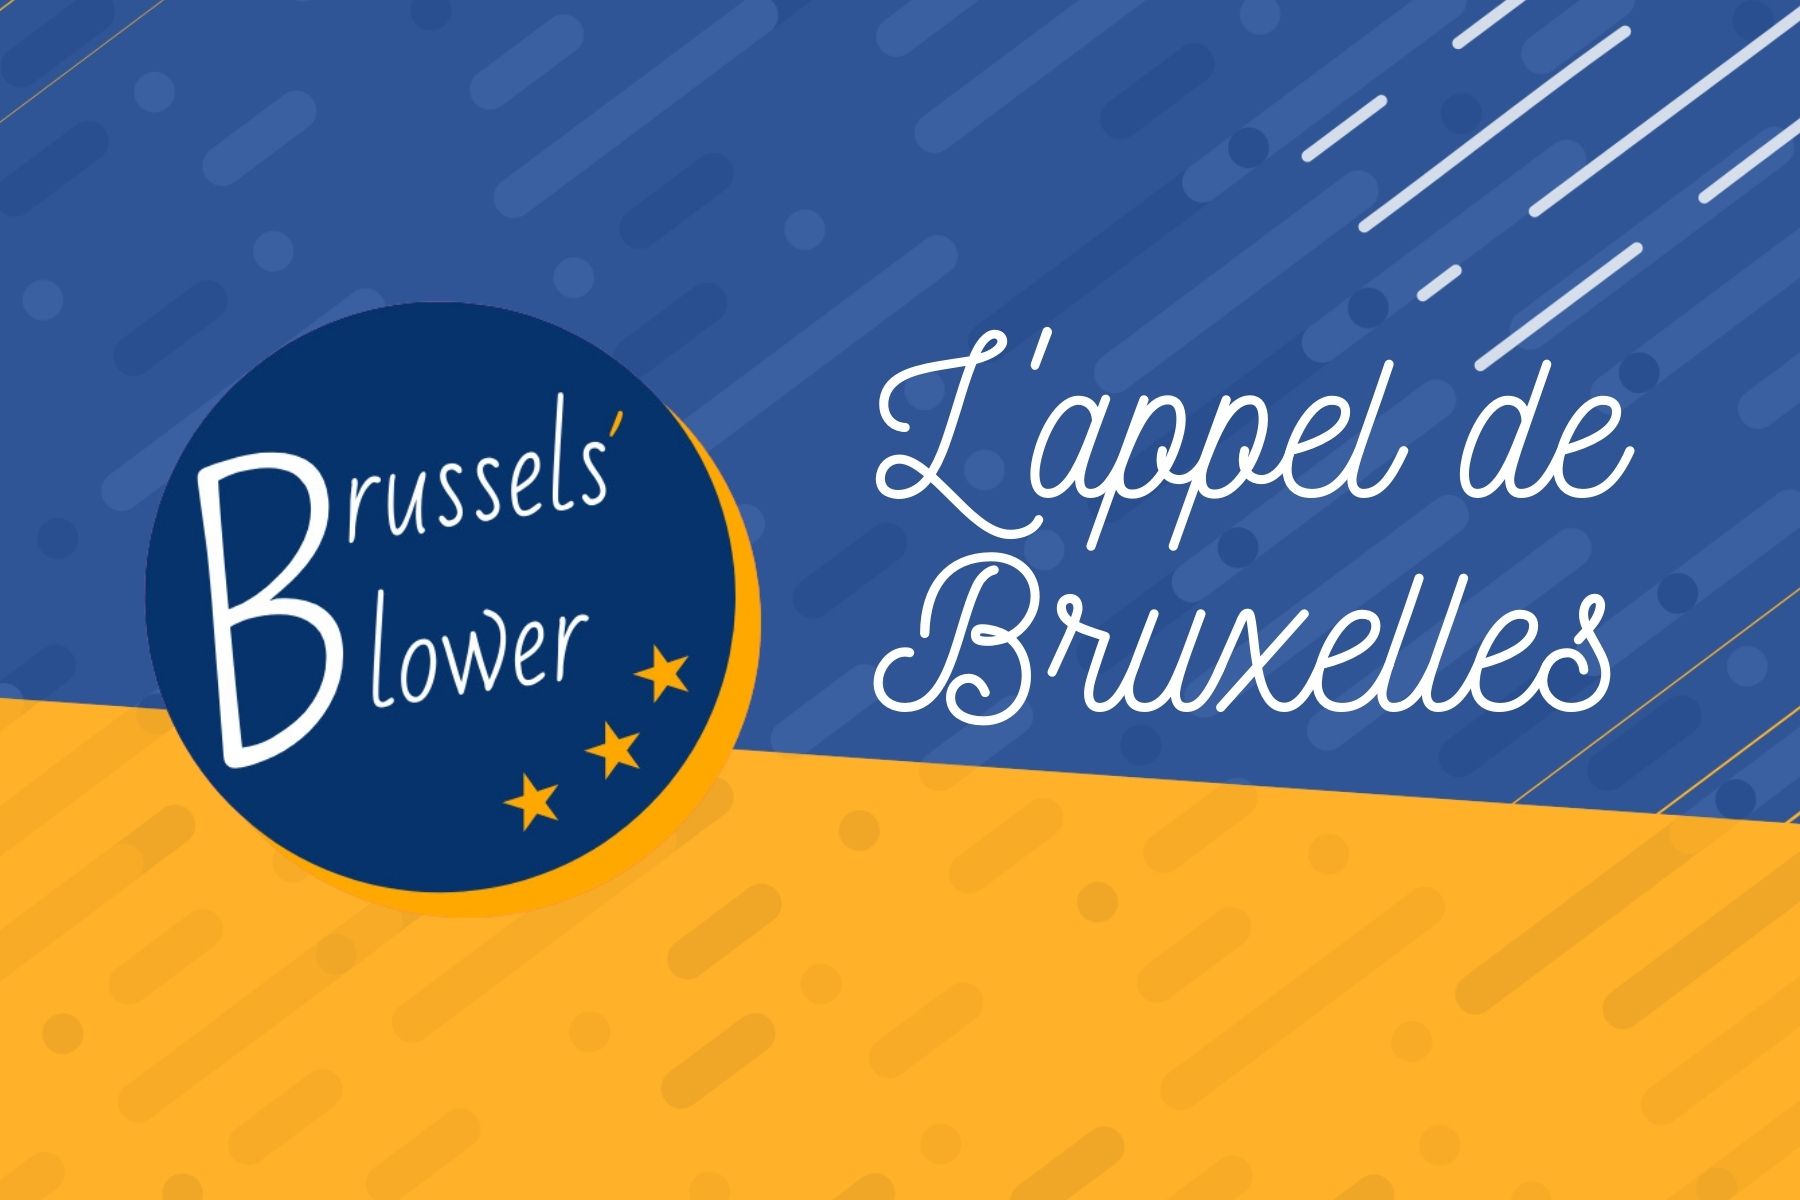 Brussels’ Blower: L’appel de Bruxelles #4 – Jeanne (GSK)